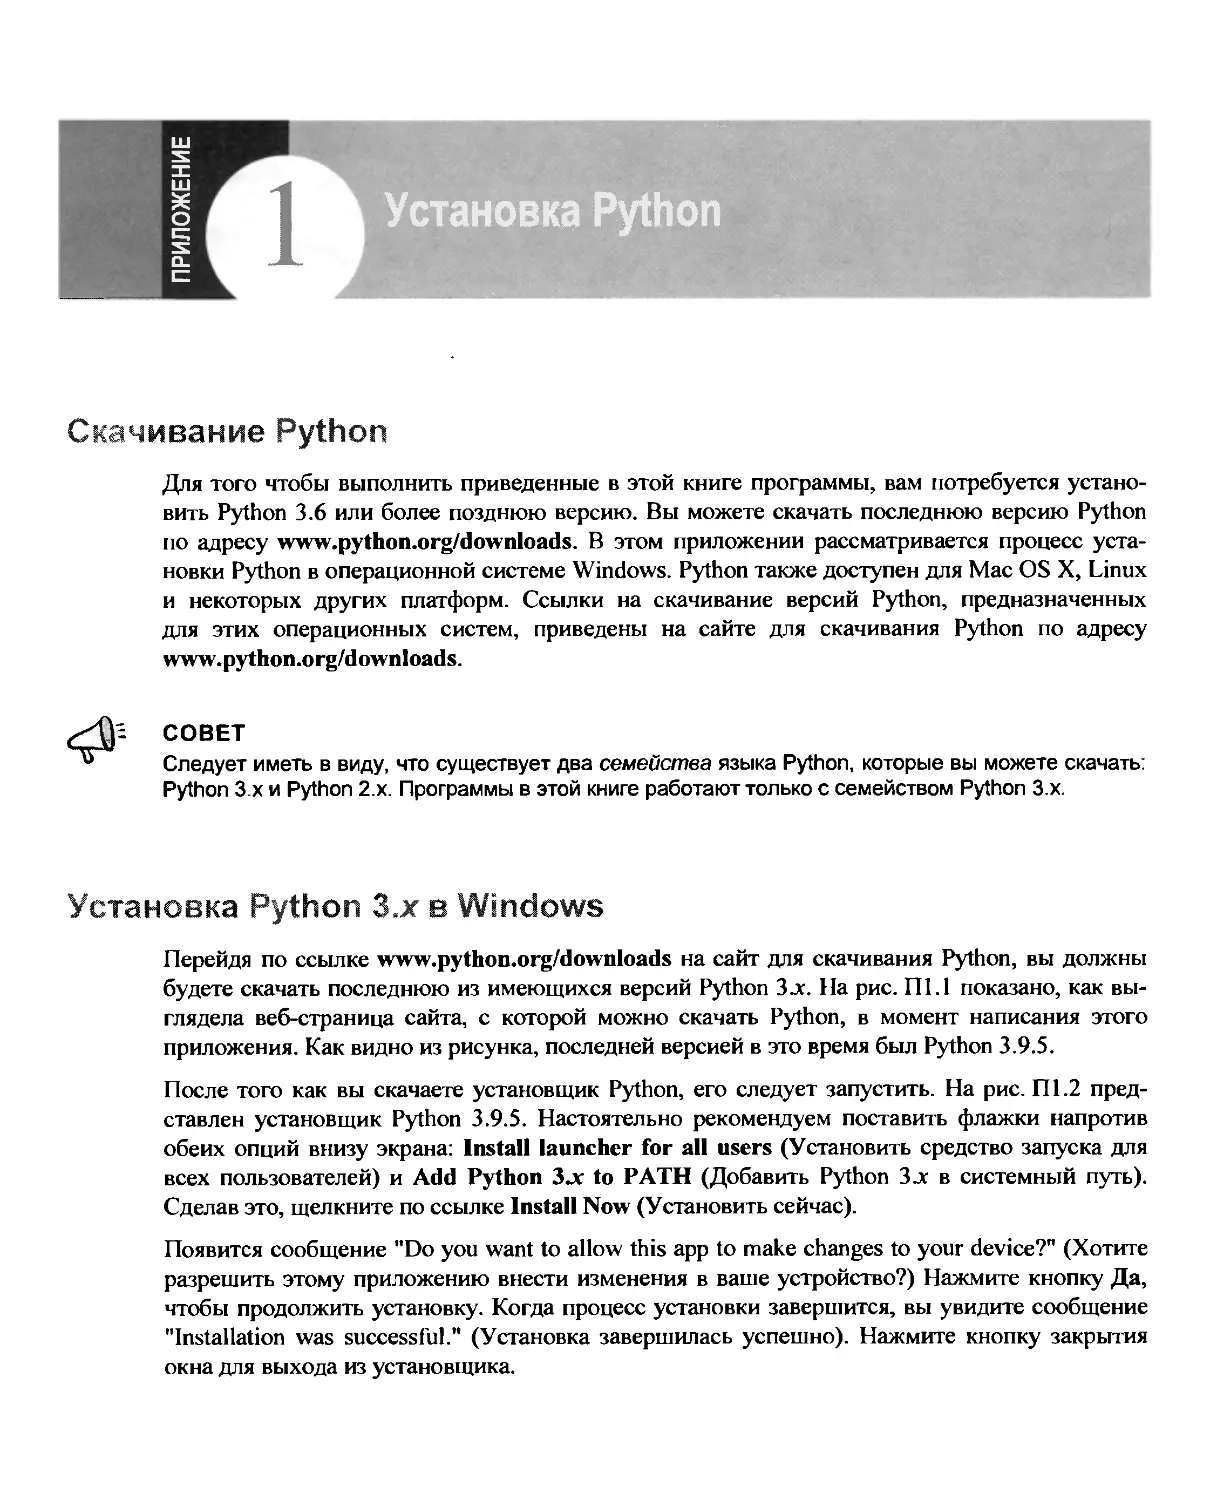 Установка Python 3.x в Windows